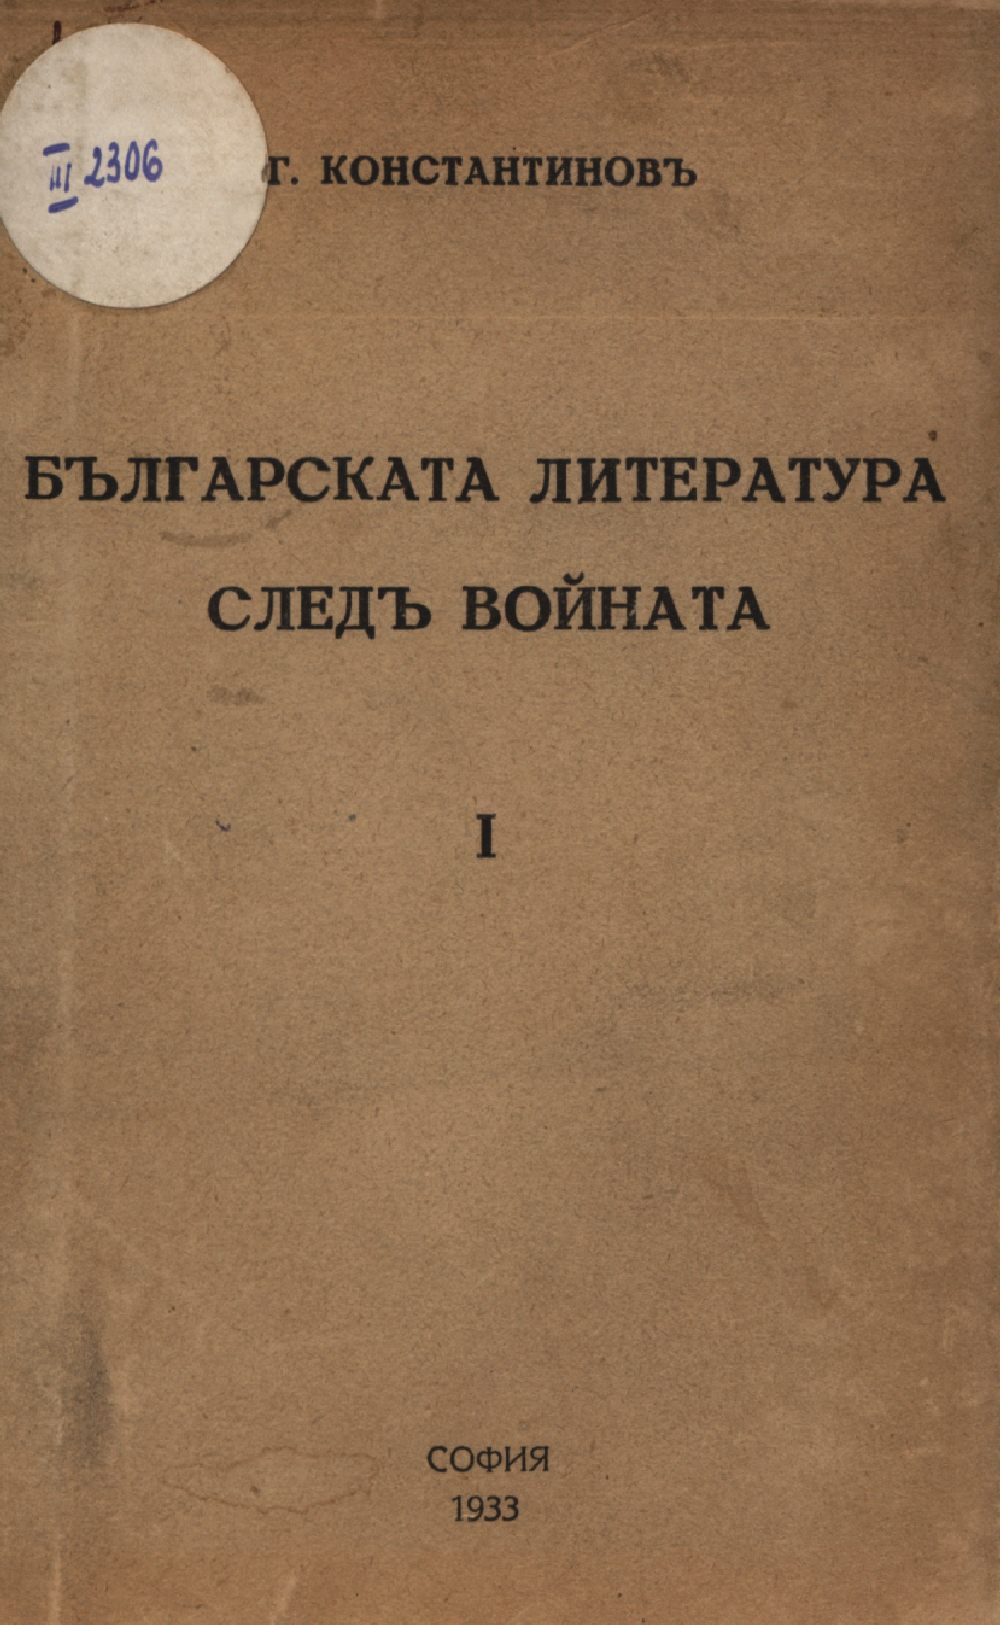 Българската литература след войната